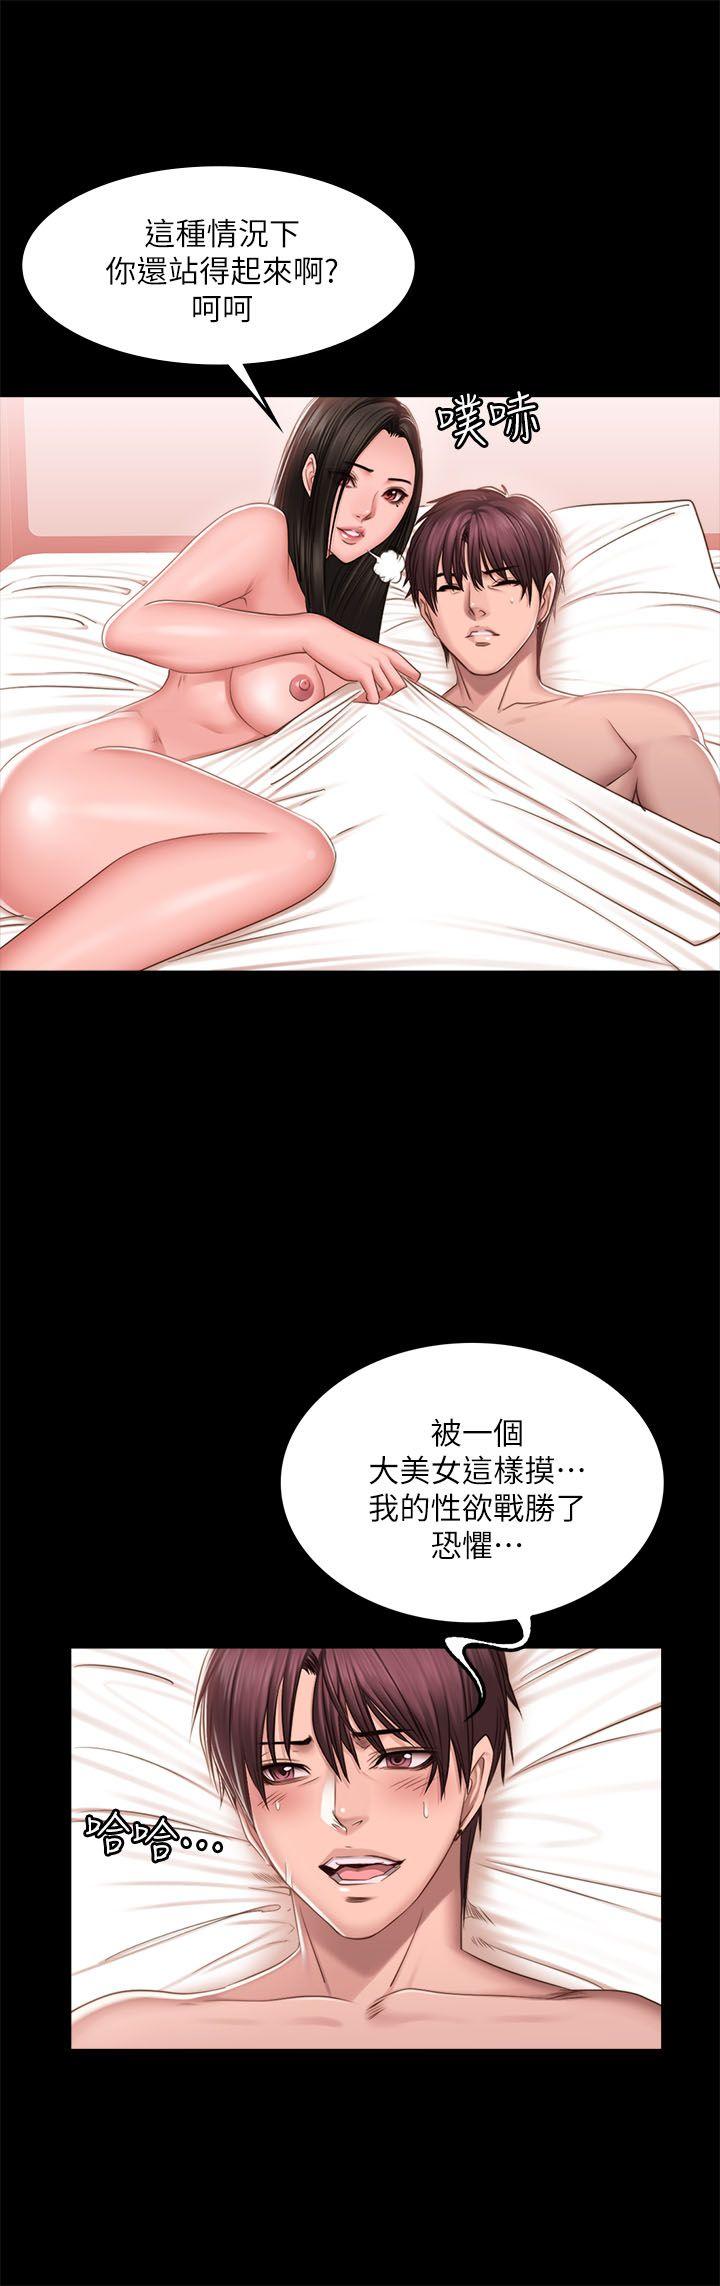 韩国污漫画 製作人:練習生 第68话 11